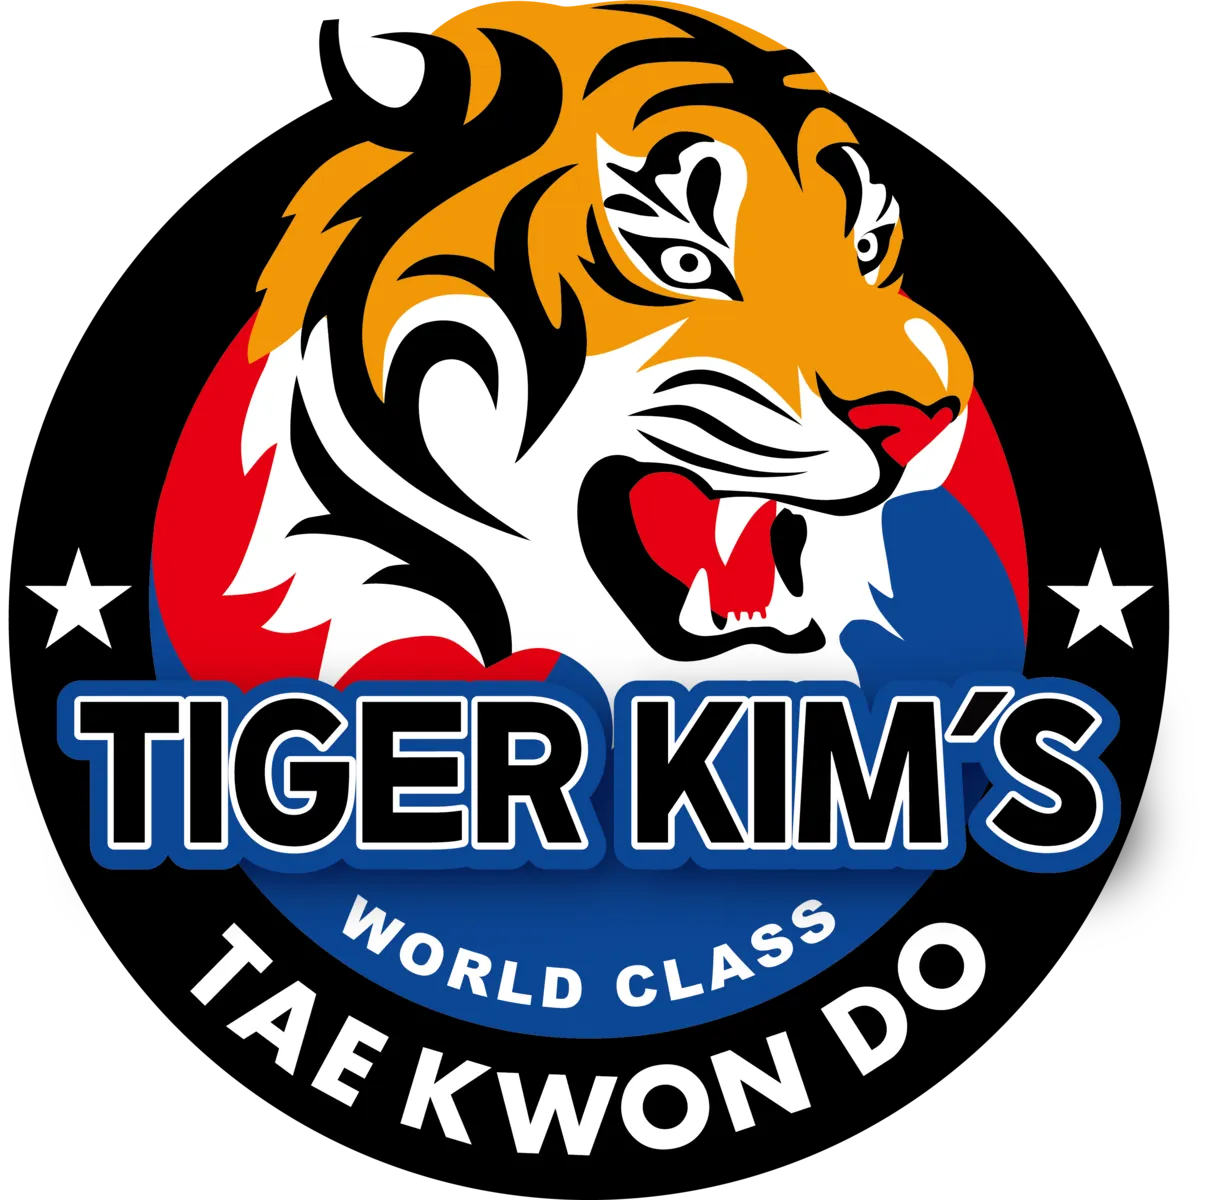 Tiger Kim’s World Class Tae Kwon Do